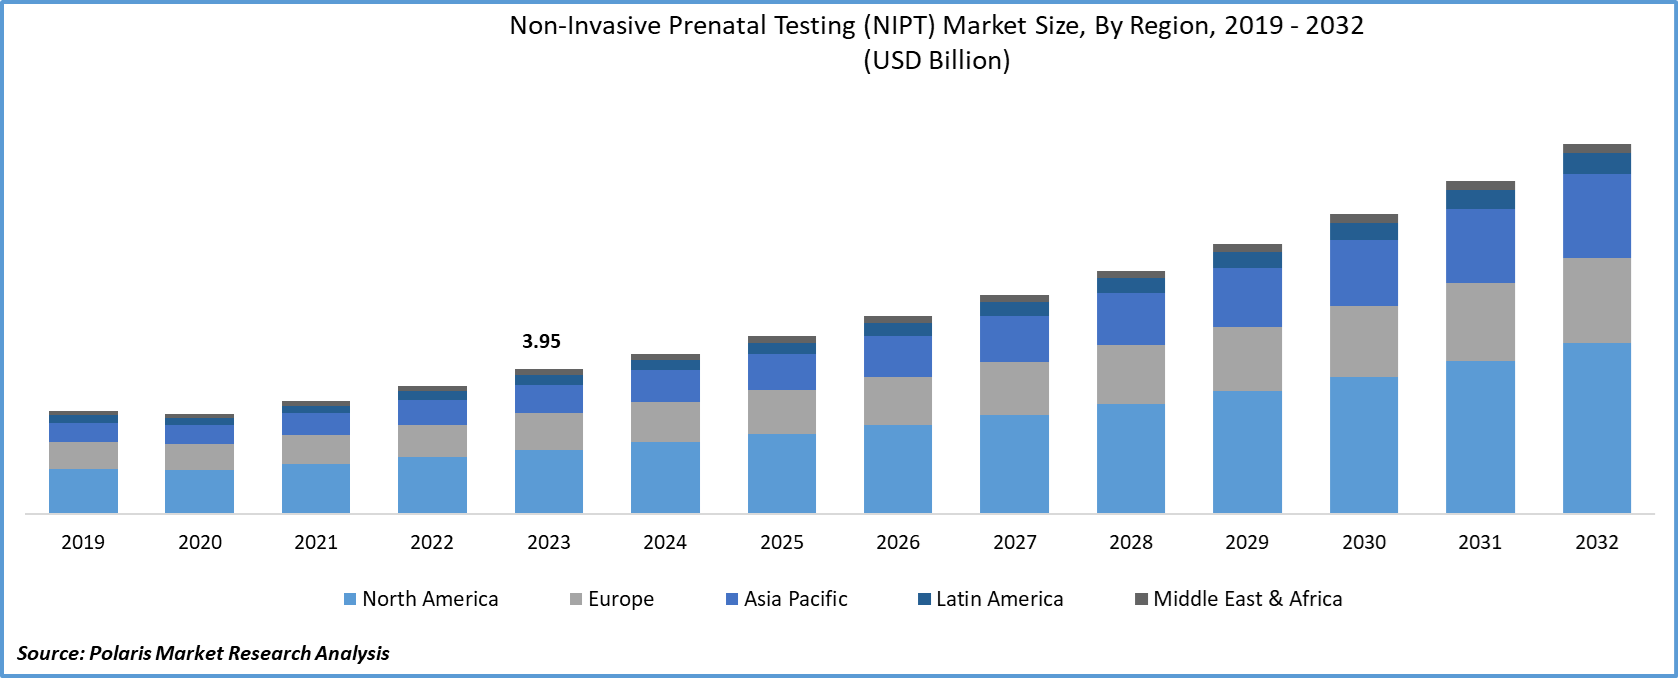 Non-Invasive Prenatal Testing (NIPT) Market Share